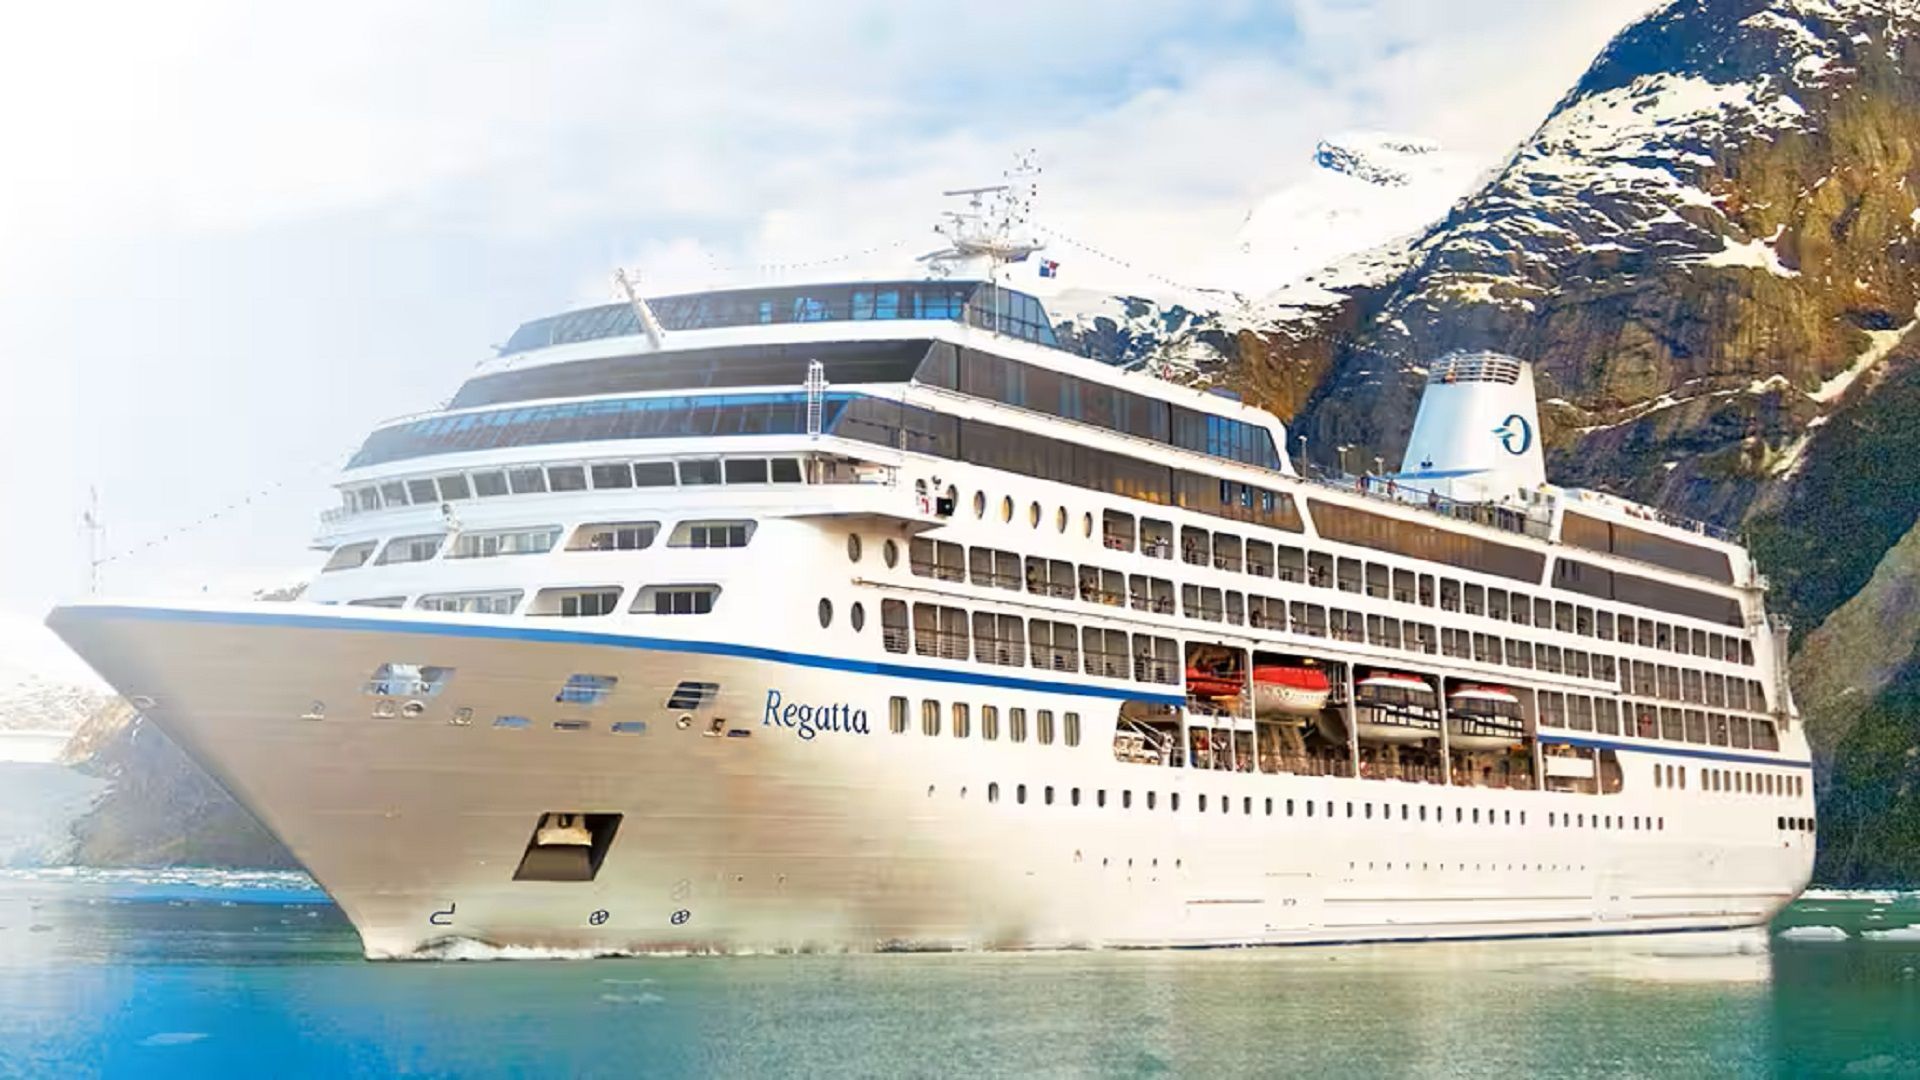 Oceania Cruises' Nautica – Singapore to Hong Kong via Thailand